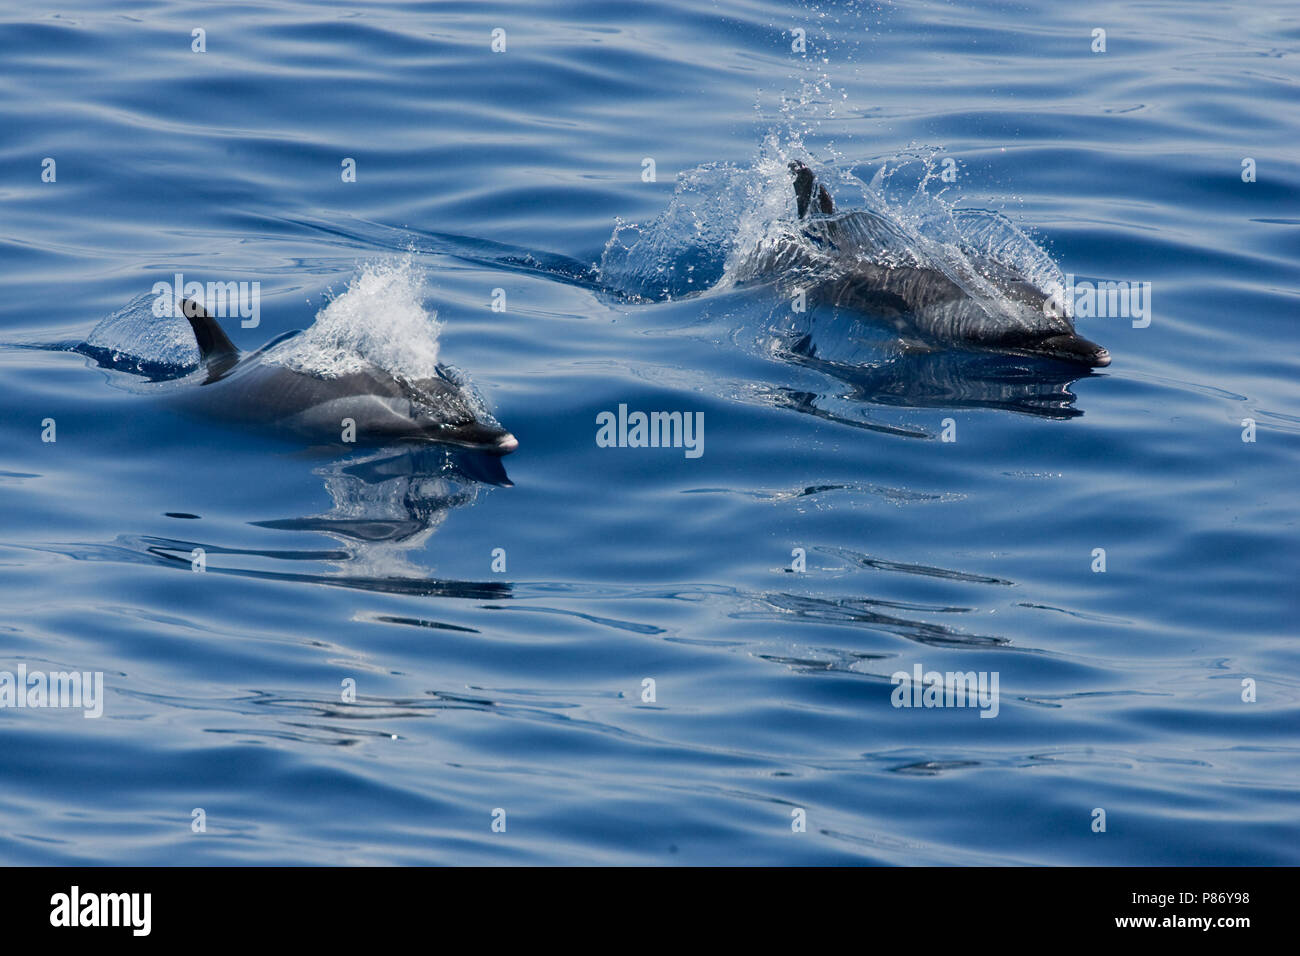 Jumporama Pantropische gevlekte dolfijnen, deux dauphins tachetés pantropicaux Banque D'Images